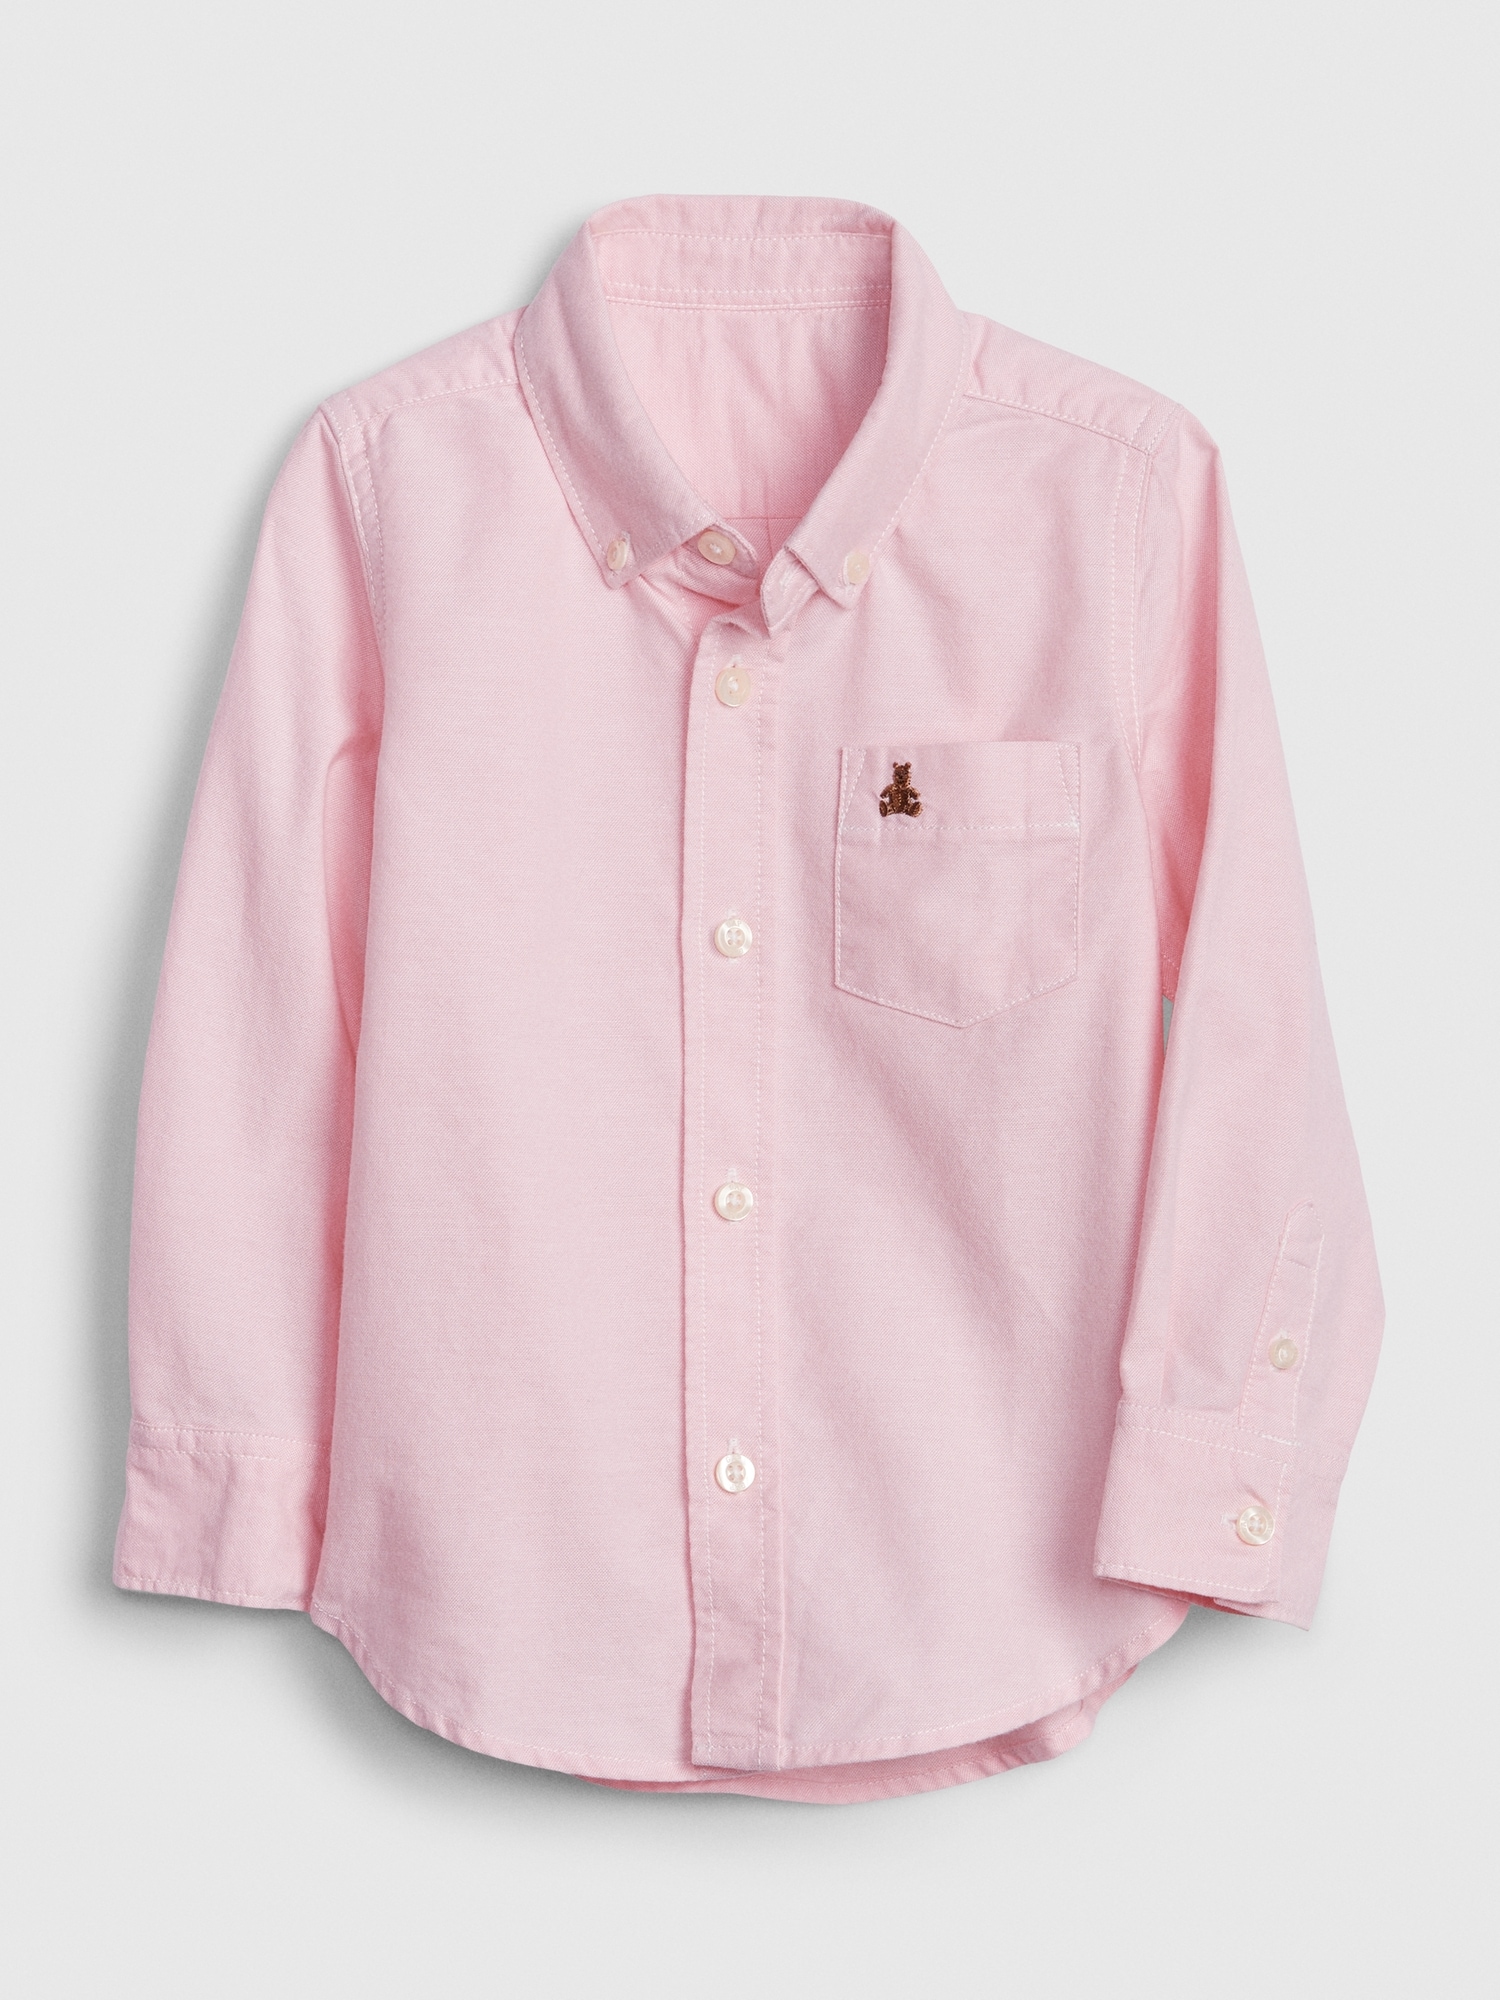 shirt button gap